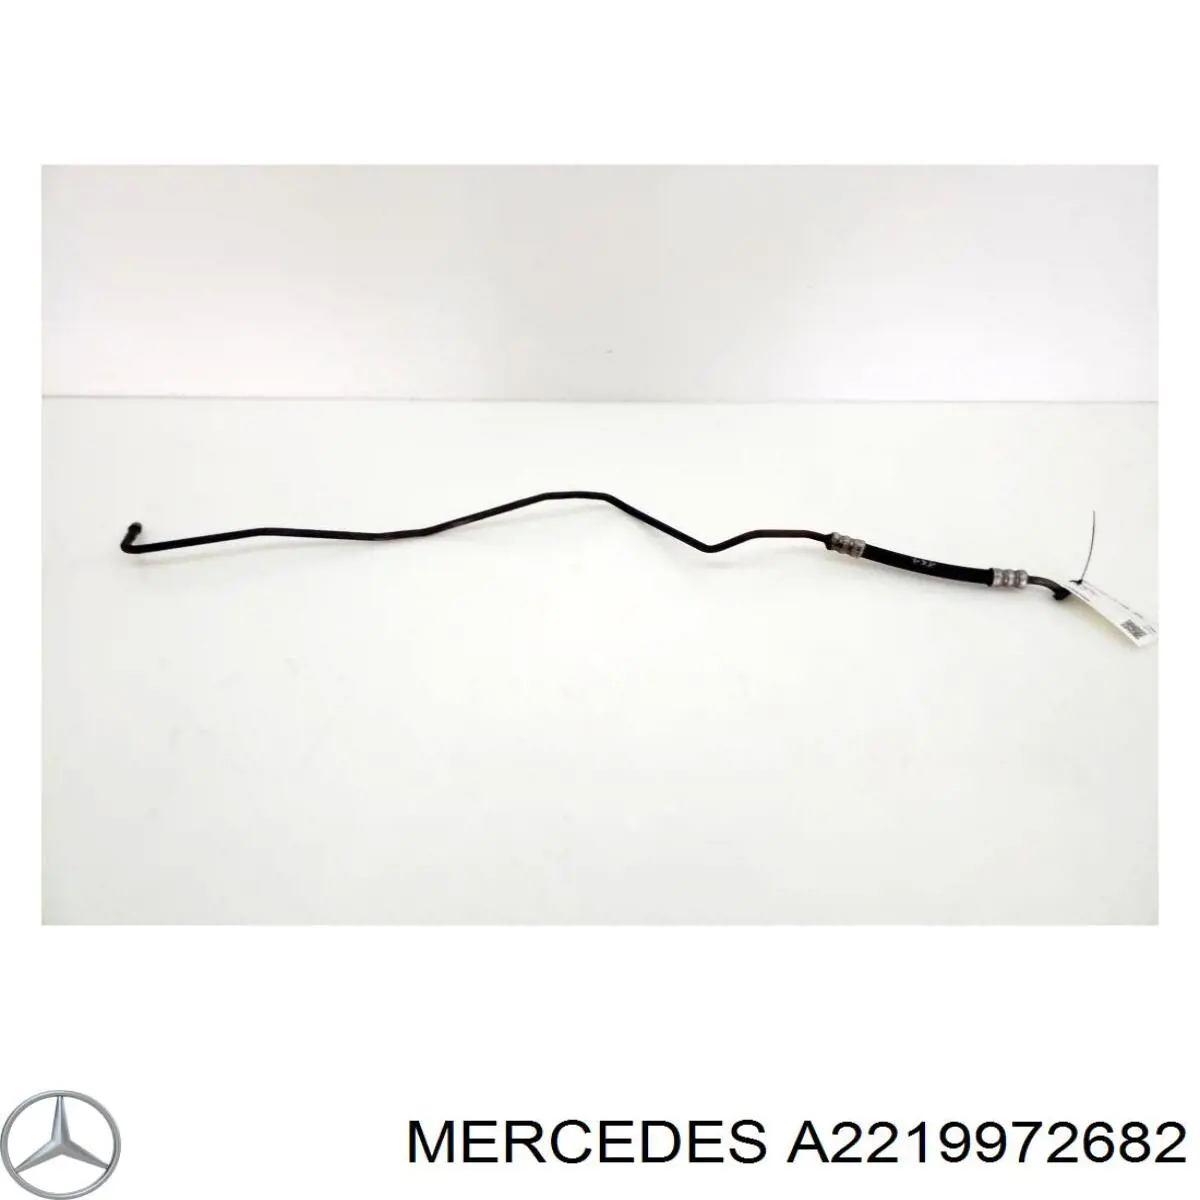 Шланг ГПК, низького тиску, від рейки/механізму до радіатора на Mercedes S-Class (W221)